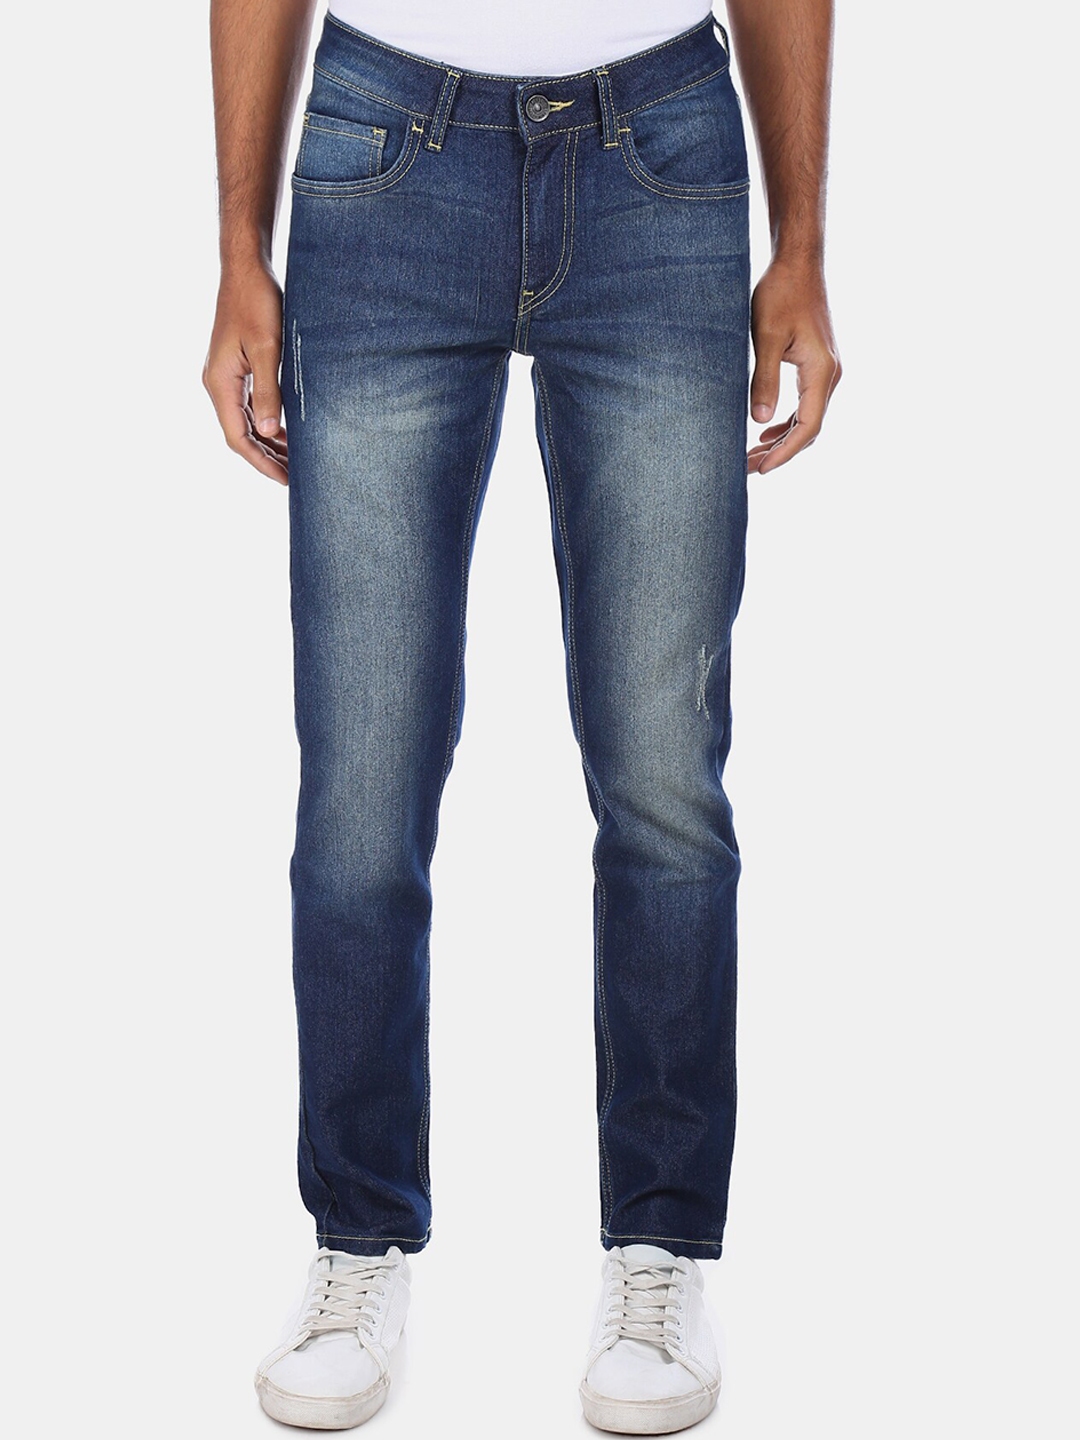 Buy Colt Men Blue Regular Fit Jeans - Jeans for Men 13580002 | Myntra